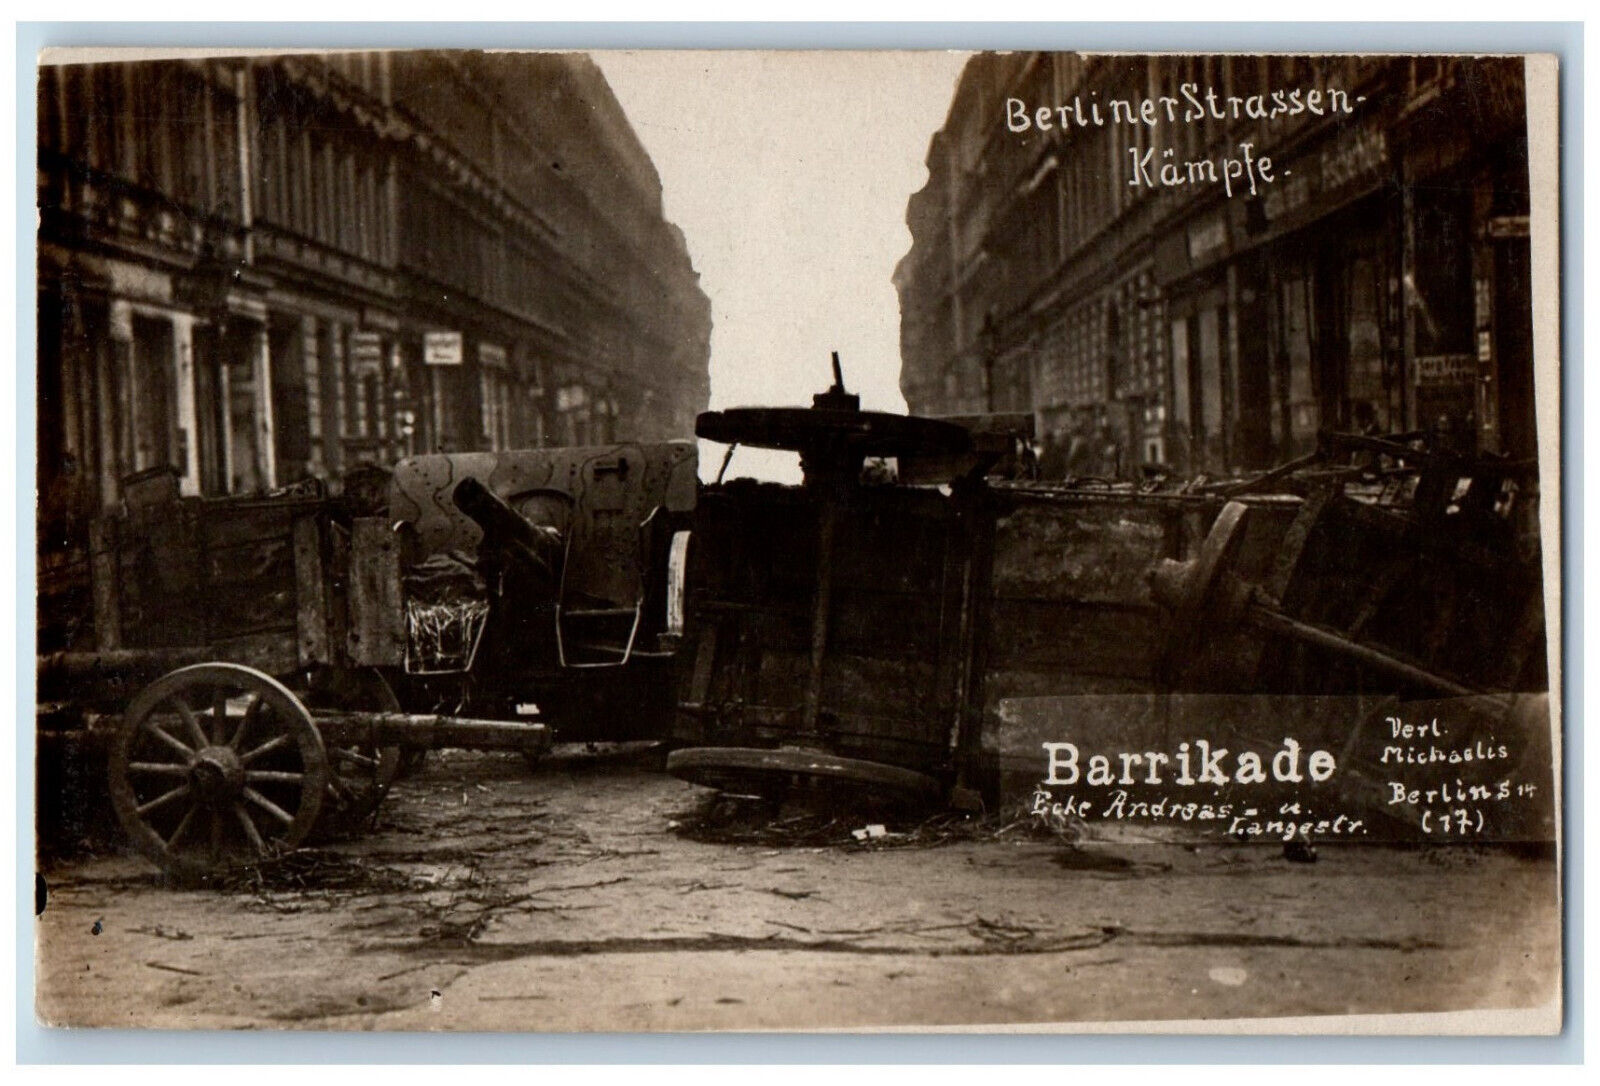 Berlin Germany Postcard Berlin Street Fights War 1975 WW2 RPPC Photo